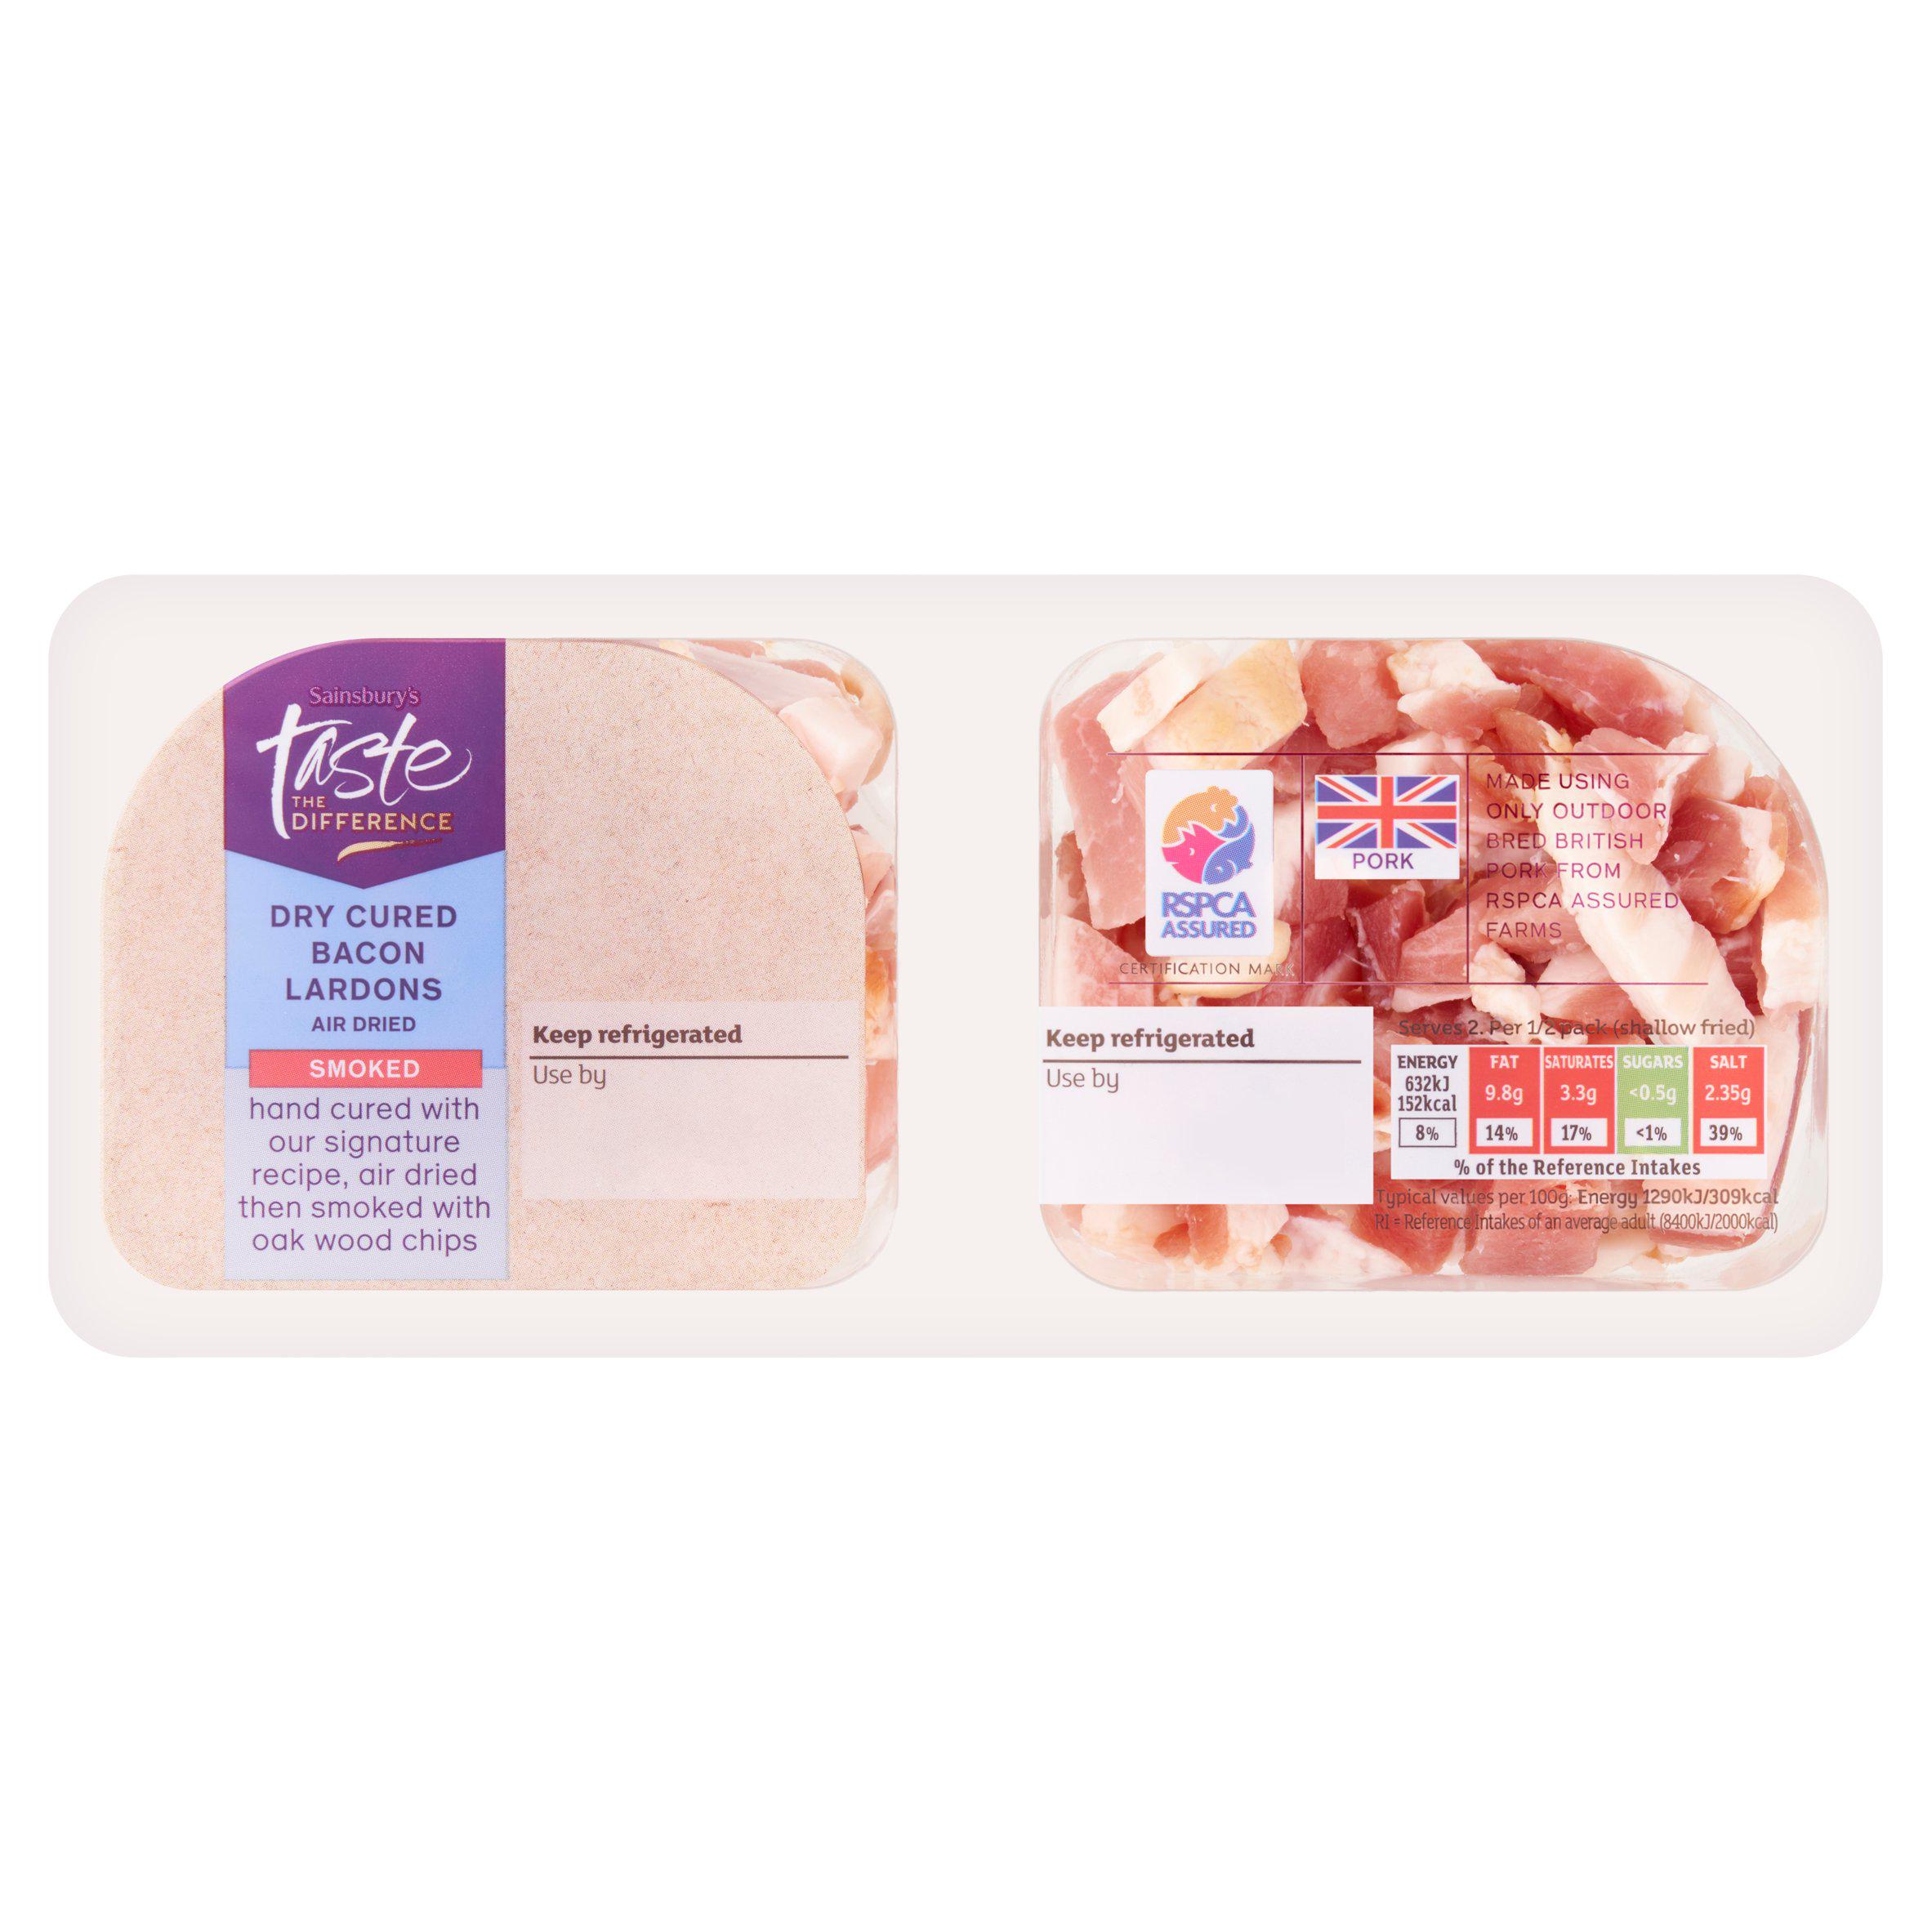 Sainsbury's Smoked Air Dried Bacon Lardons, Taste the Difference 160g